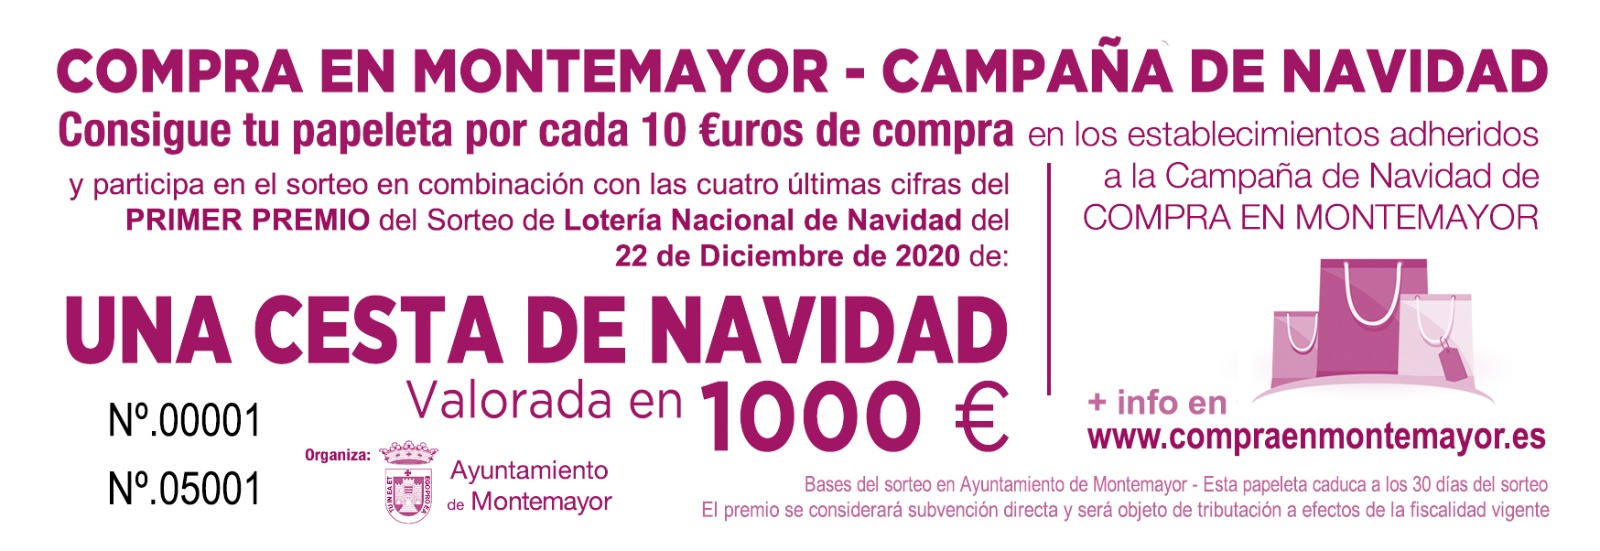 Compra en Montemayor - Campaña de Navidad 1